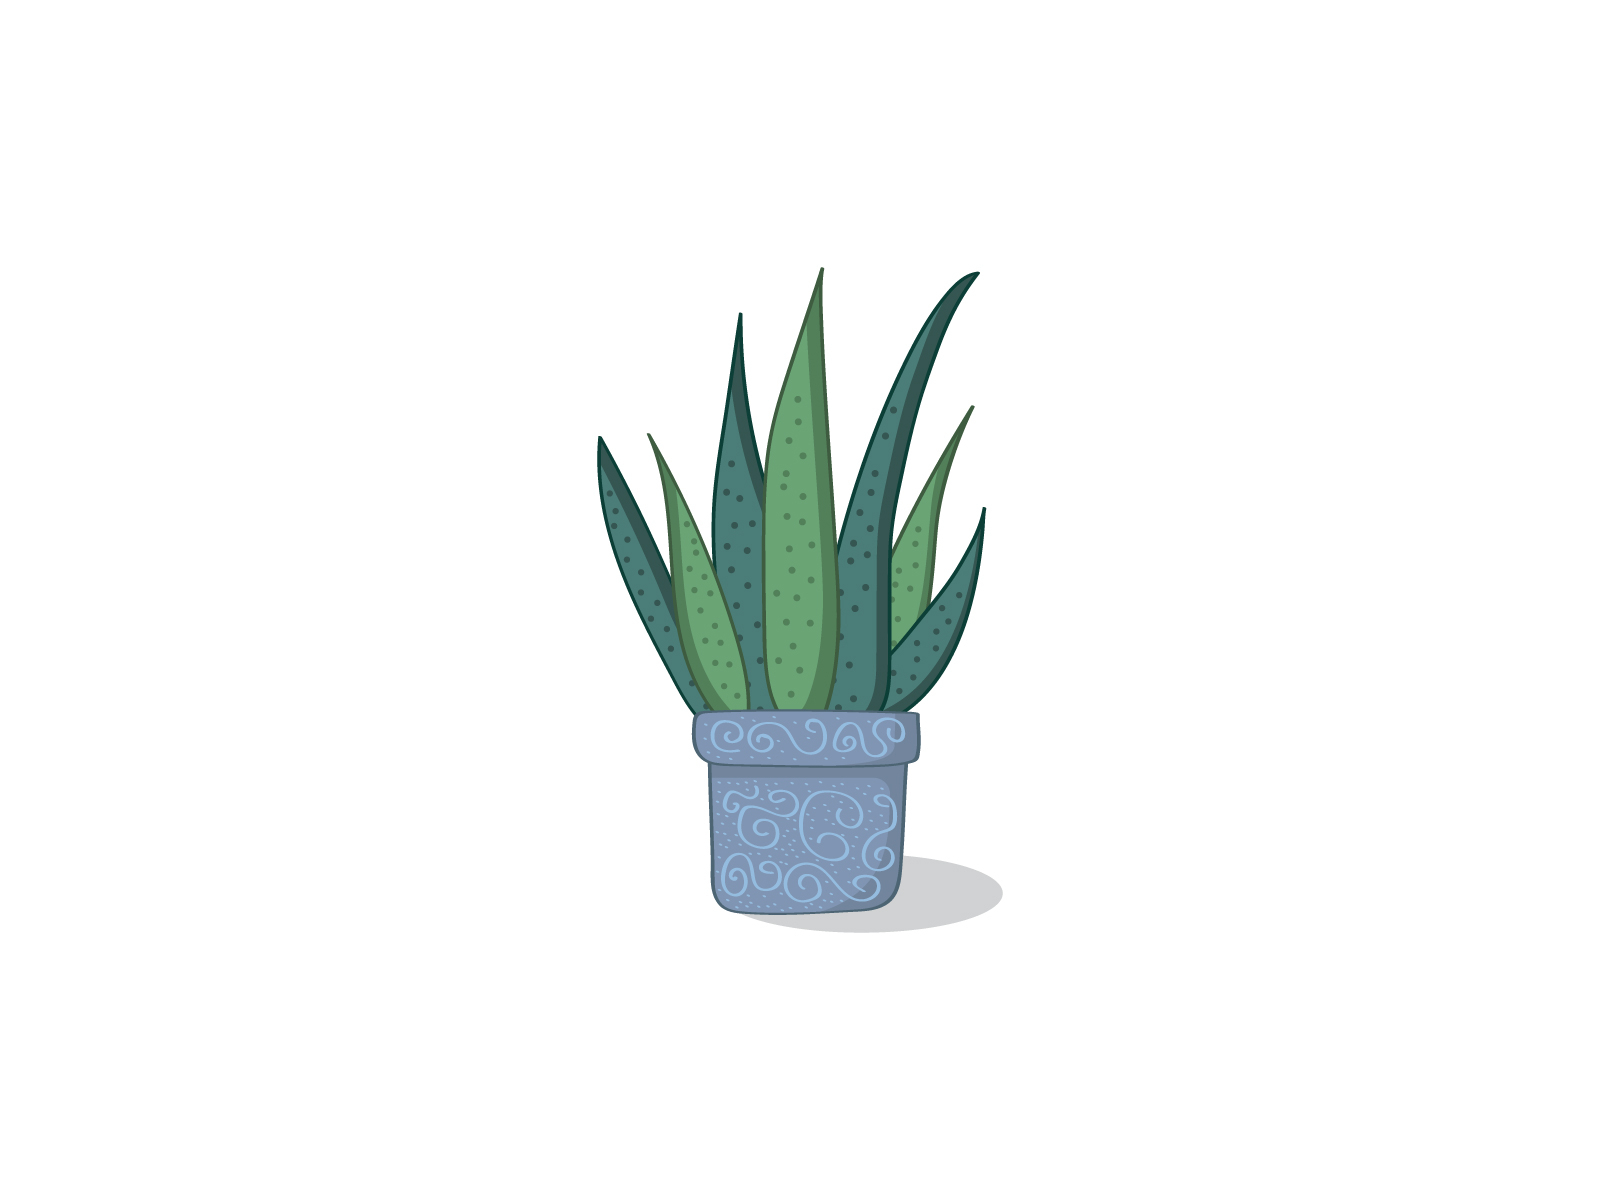 Aloe Vera Plant botanical botanical illustration design illustrator patttern plant plant illustration